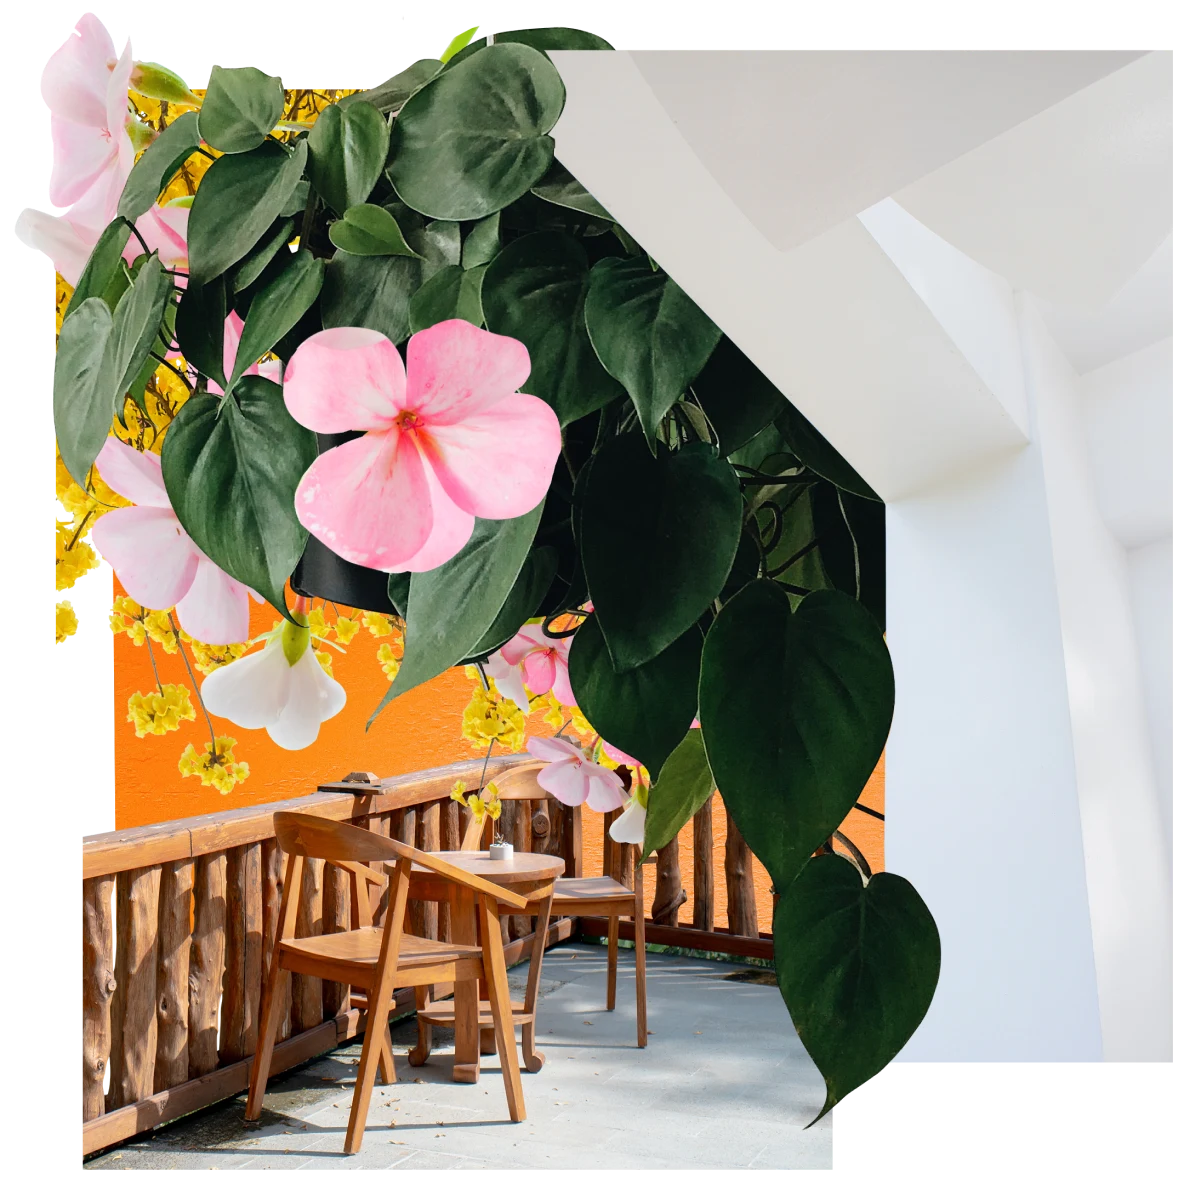 Eine Collage mit grünen, braunen, gelben und weißen Gegenständen. In der Mitte grüne Blätter, die von einer Decke herunterhängen, dazwischen rosafarbene und gelbe Blumen. Rechts ist die Unterseite einer weißen Treppe zu sehen. Im Vordergrund stehen zwei Holzstühle und ein runder Tisch auf einer Außenterrasse.